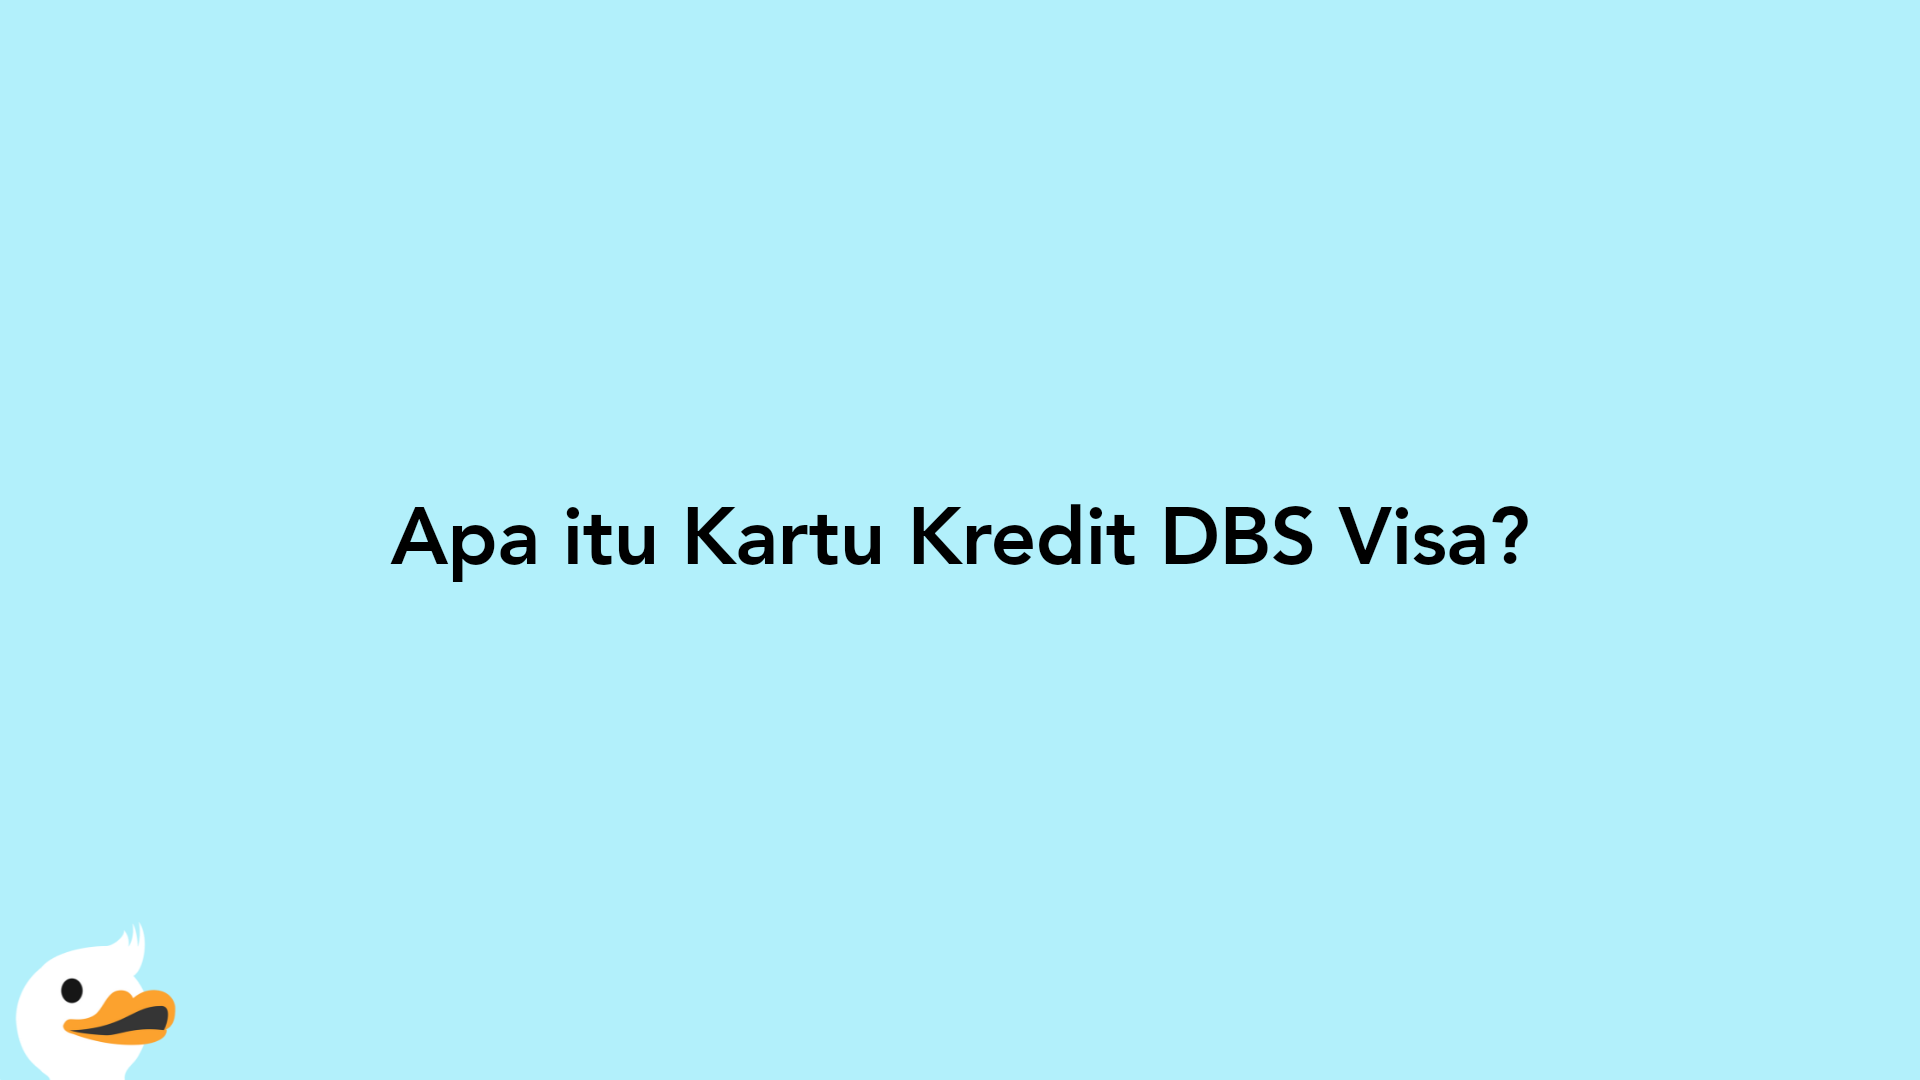 Apa itu Kartu Kredit DBS Visa?